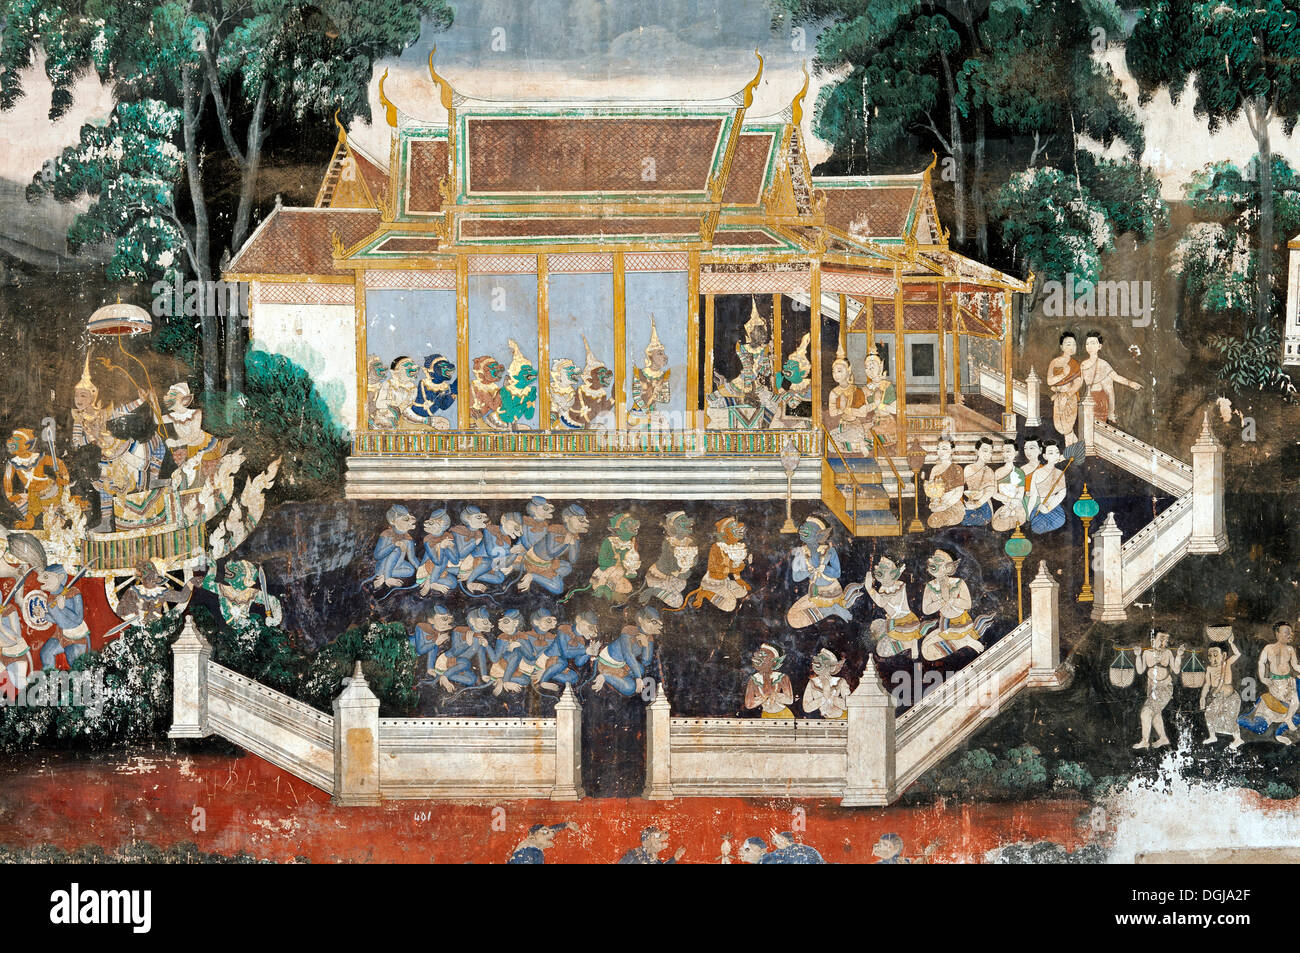 Wandgemälde mit Szenen aus der Khmer Version oder Reamker Version des klassischen indischen Ramayana-Epos in der überdachten Galerie der Stockfoto